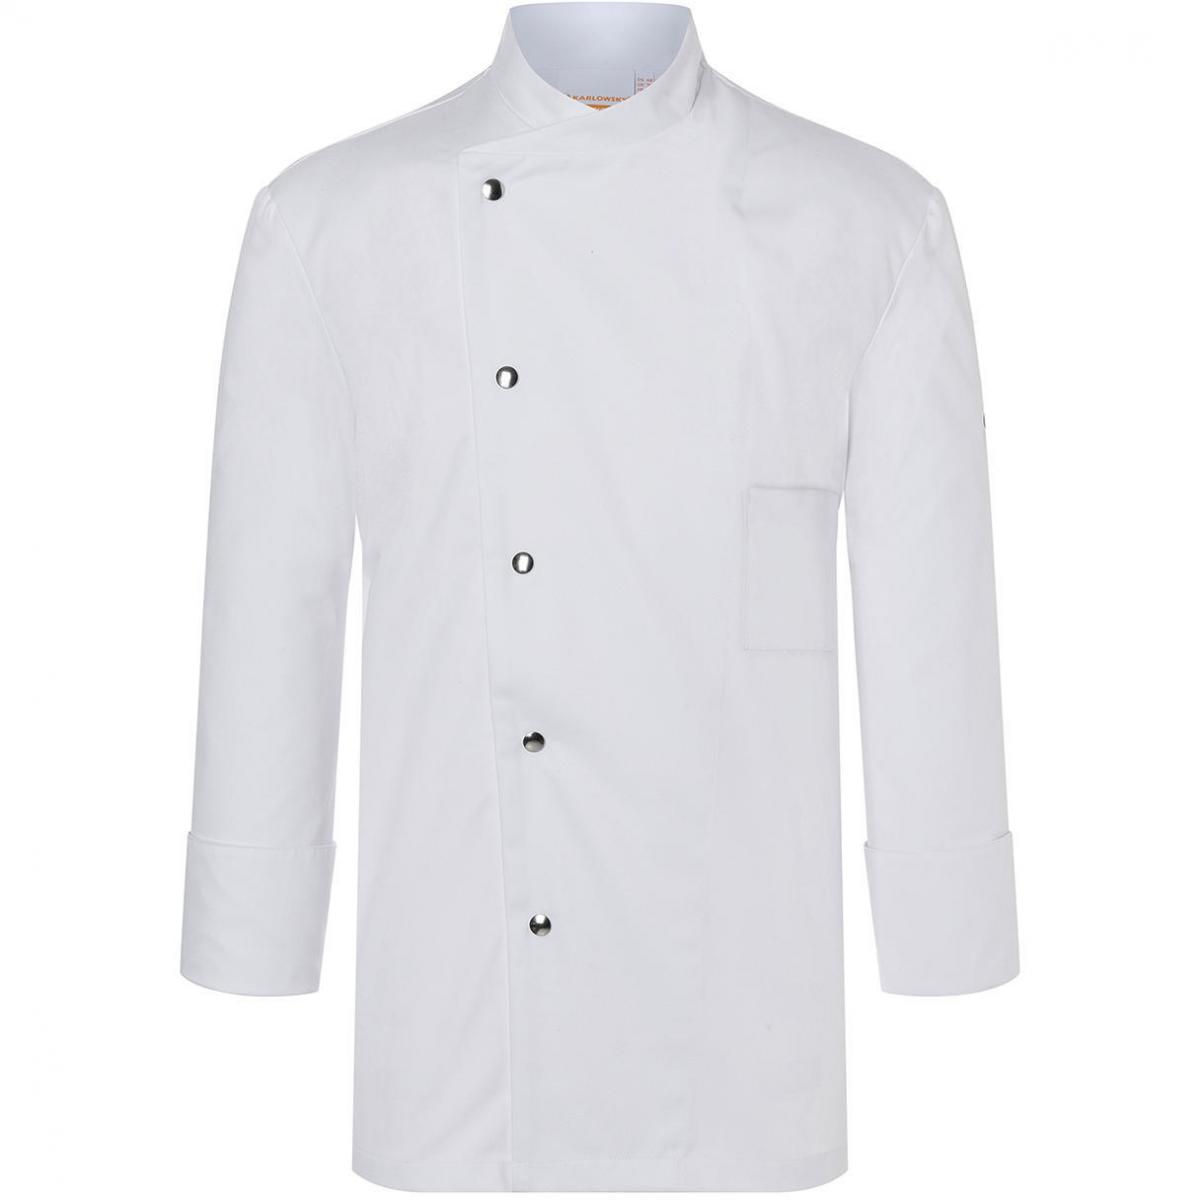 Hersteller: Karlowsky Herstellernummer: JM 14 Artikelbezeichnung: Chef Jacket Lars Long Sleeve Waschbar bis 95°C Farbe: White